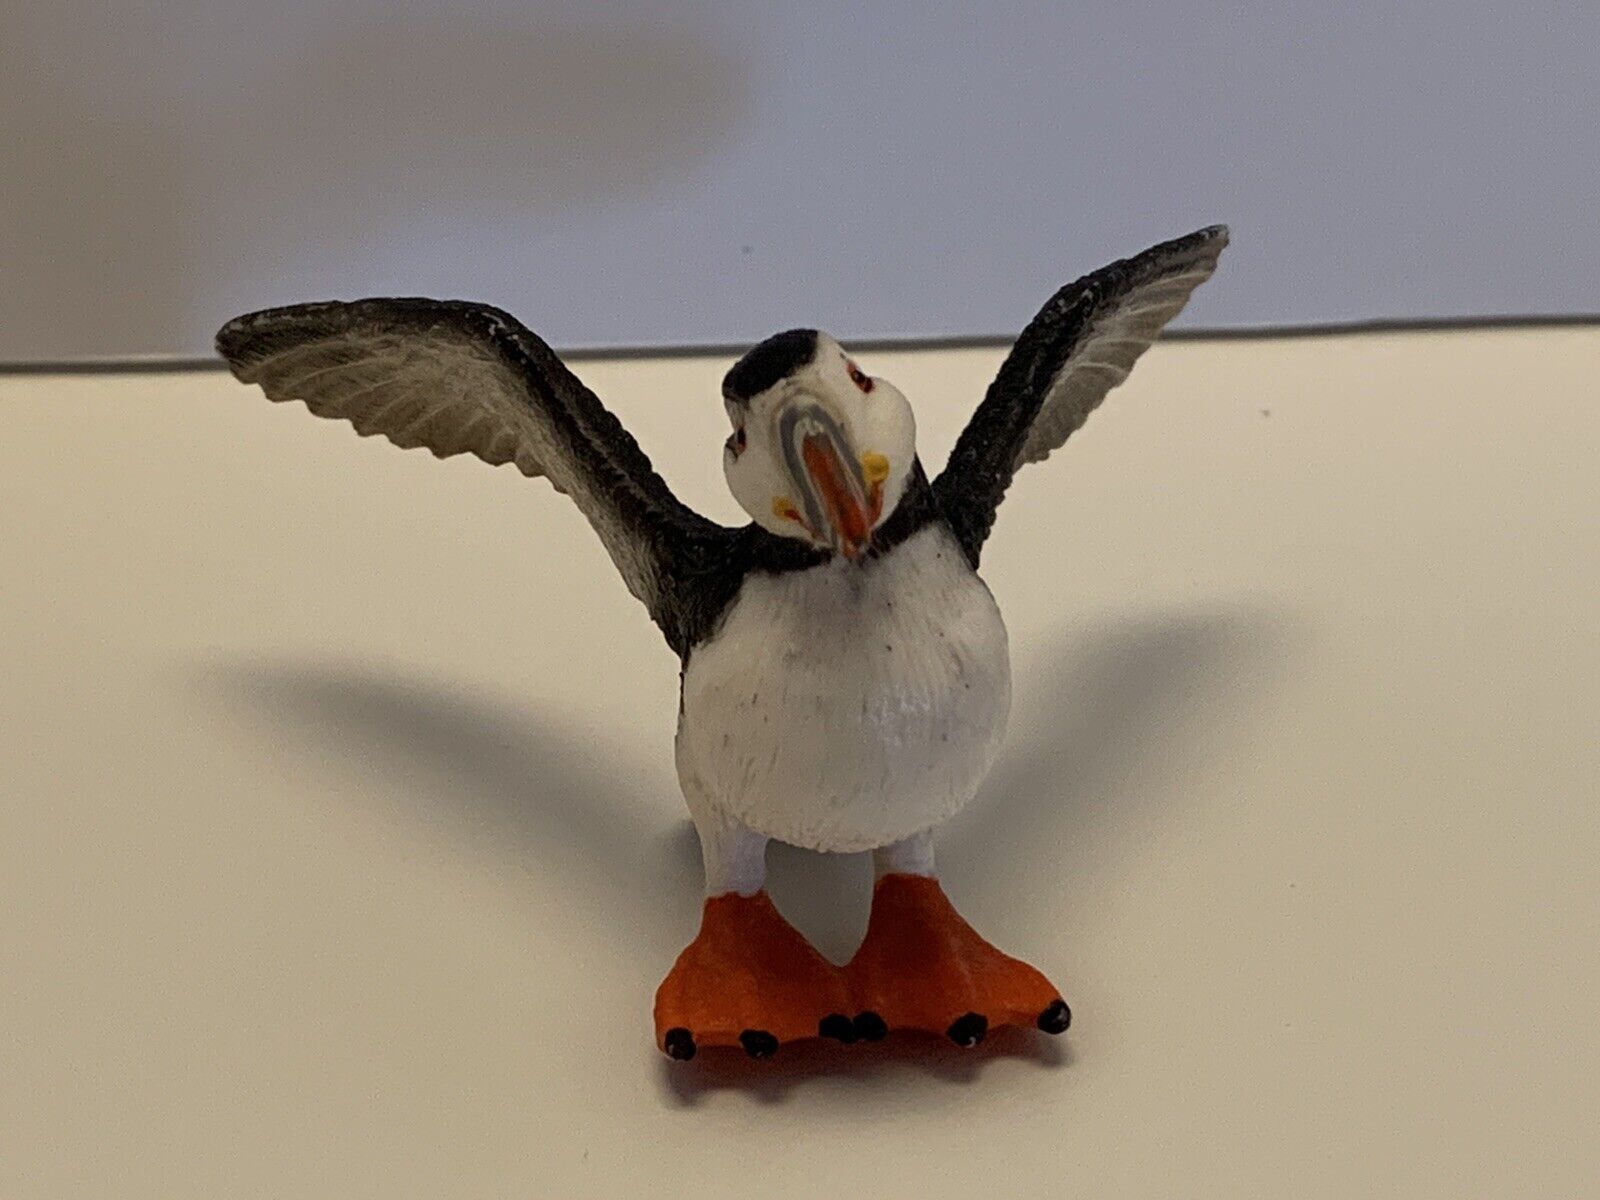 Schleich 14721 Puffin Bird Toy Animal Mini Figure Rare RETIRED Detailed Figurine